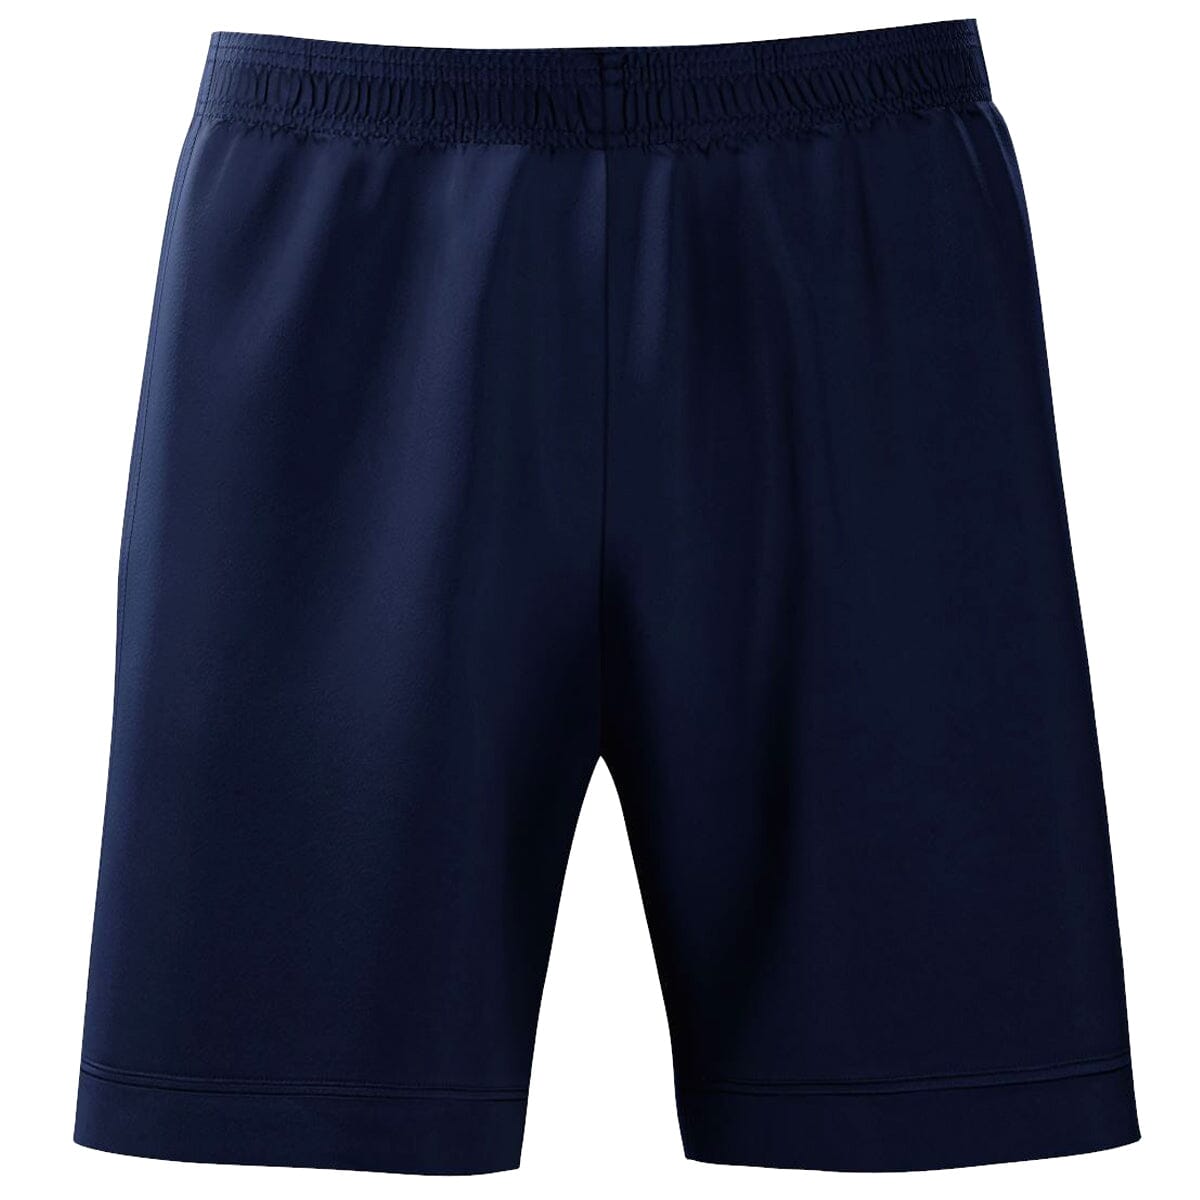 adidas miSquadra 17 Youth Custom Shorts Apparel Adidas Youth Small (8-10) Navy 